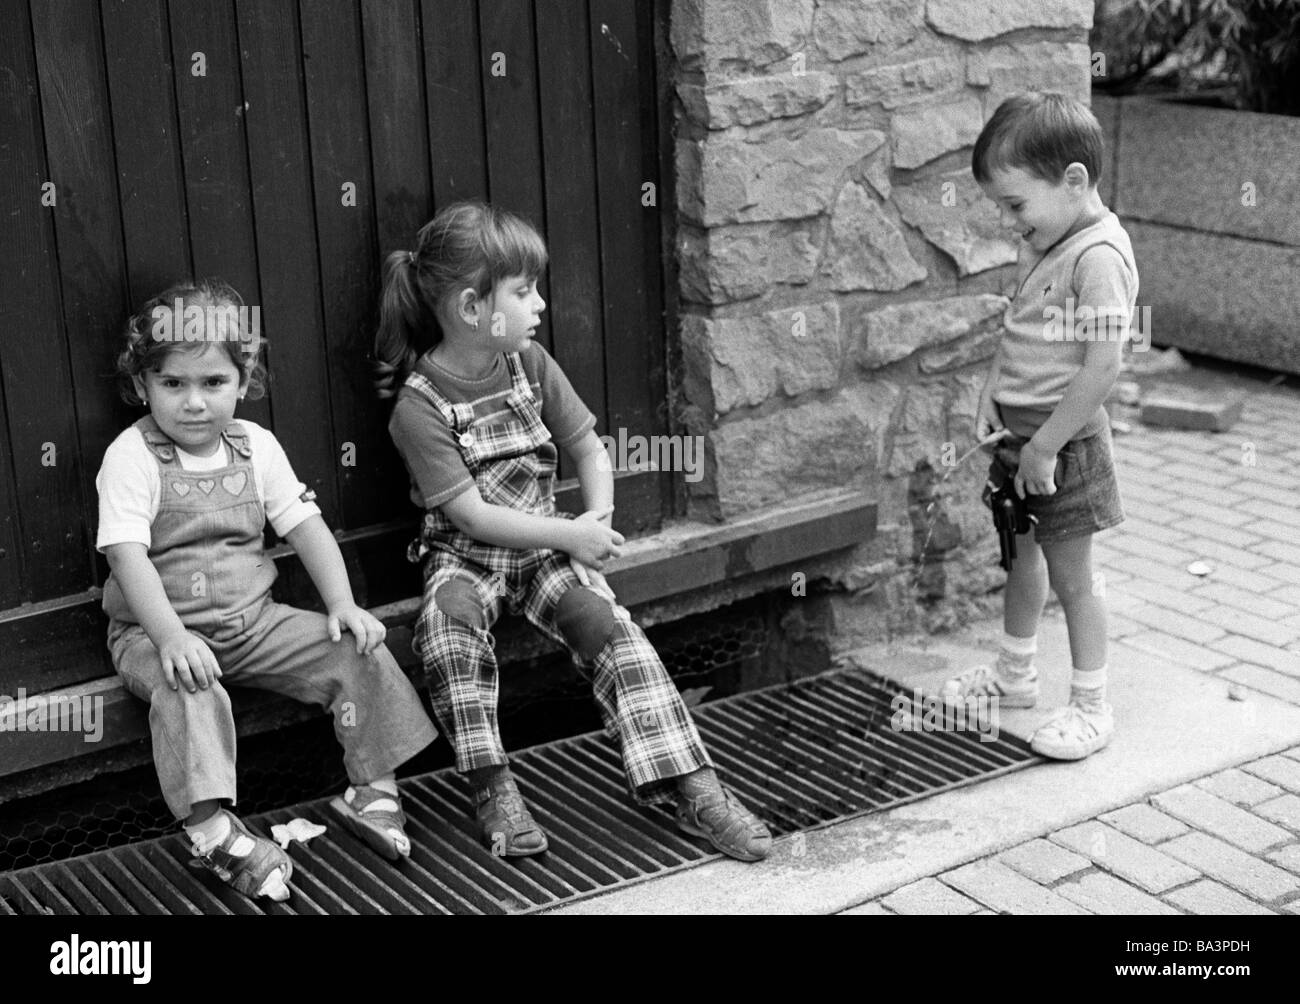 Schwarz / weiß Foto, Humor, Menschen, Kinder, zwei kleine Mädchen sitzen vor einer Haustür die Füße auf einen Abfluss der siebziger Jahre Rost, kleine Junge steht dicht neben und pinkelt in die Drain-Rost, im Alter von 4 bis 6 Jahre Stockfoto